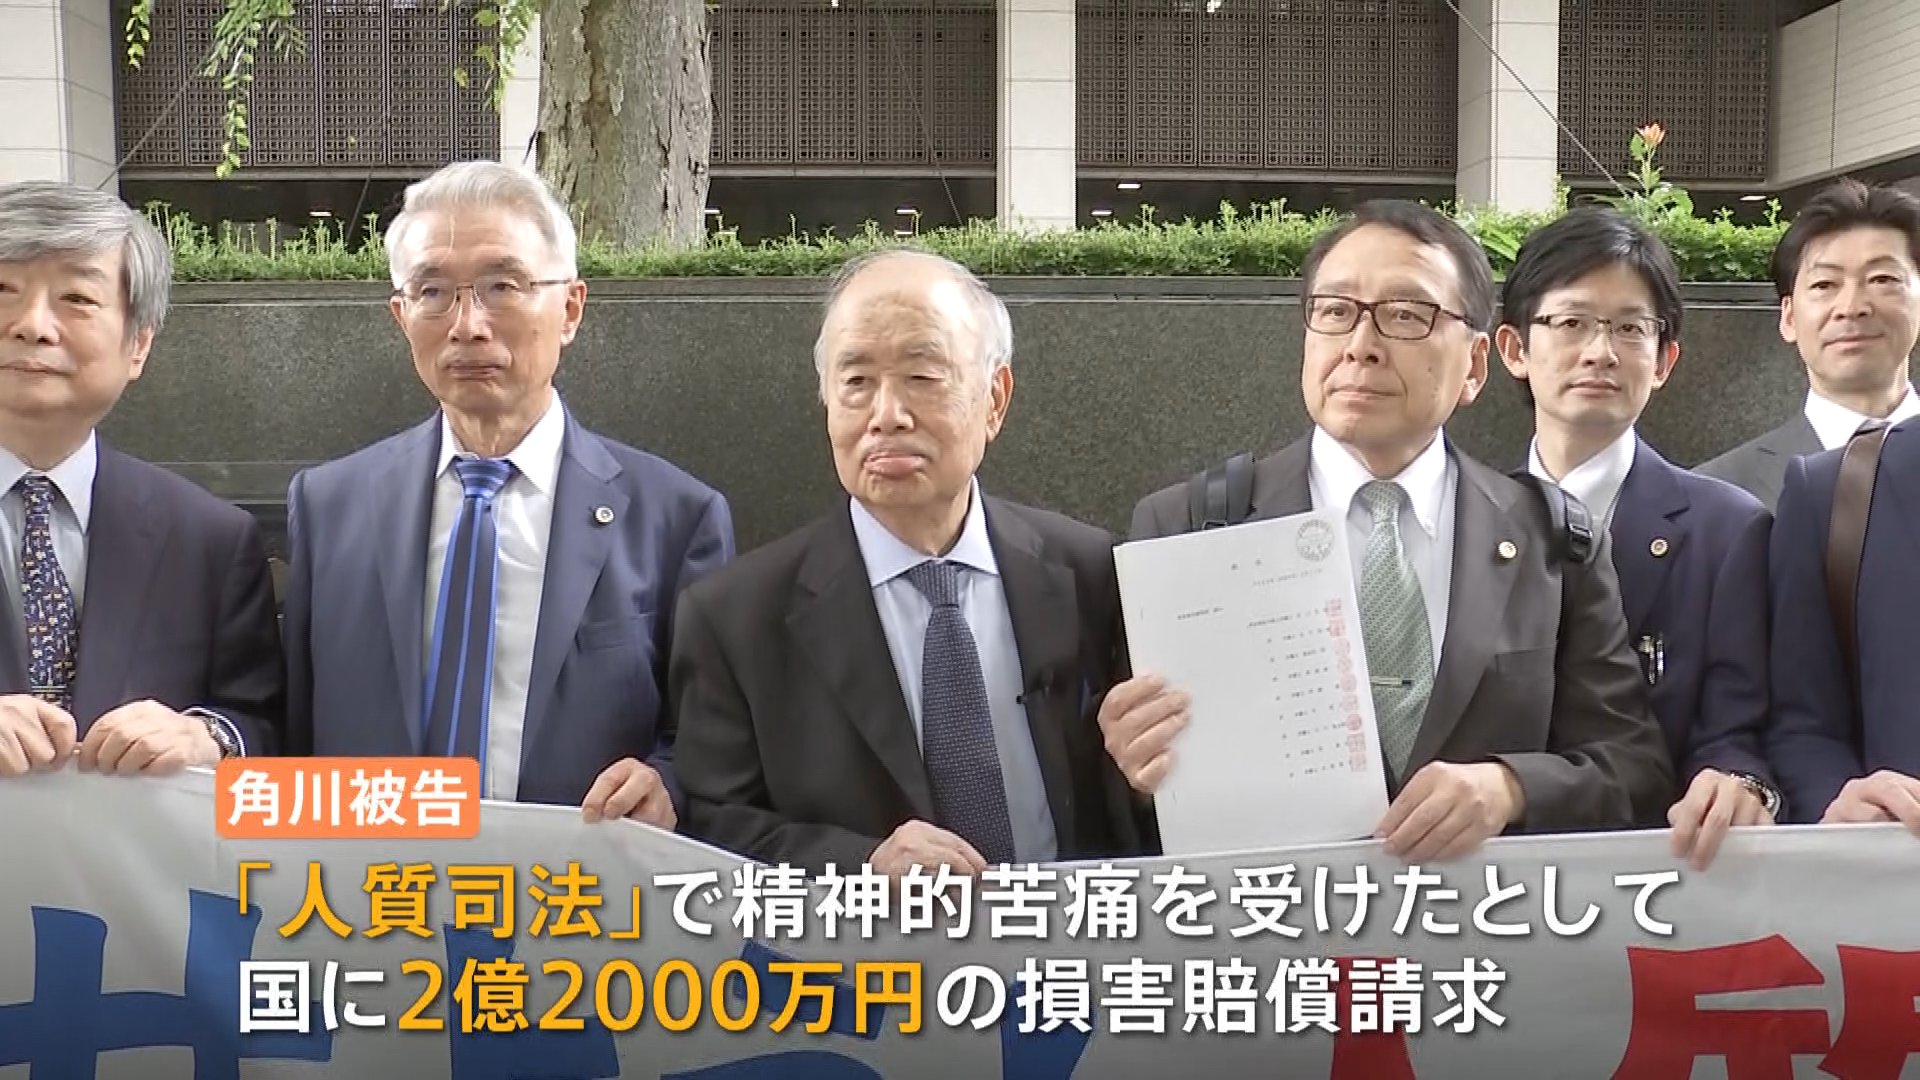 五輪汚職・KADOKAWA元会長の角川歴彦被告 「人質司法」被害訴え国家賠償訴訟